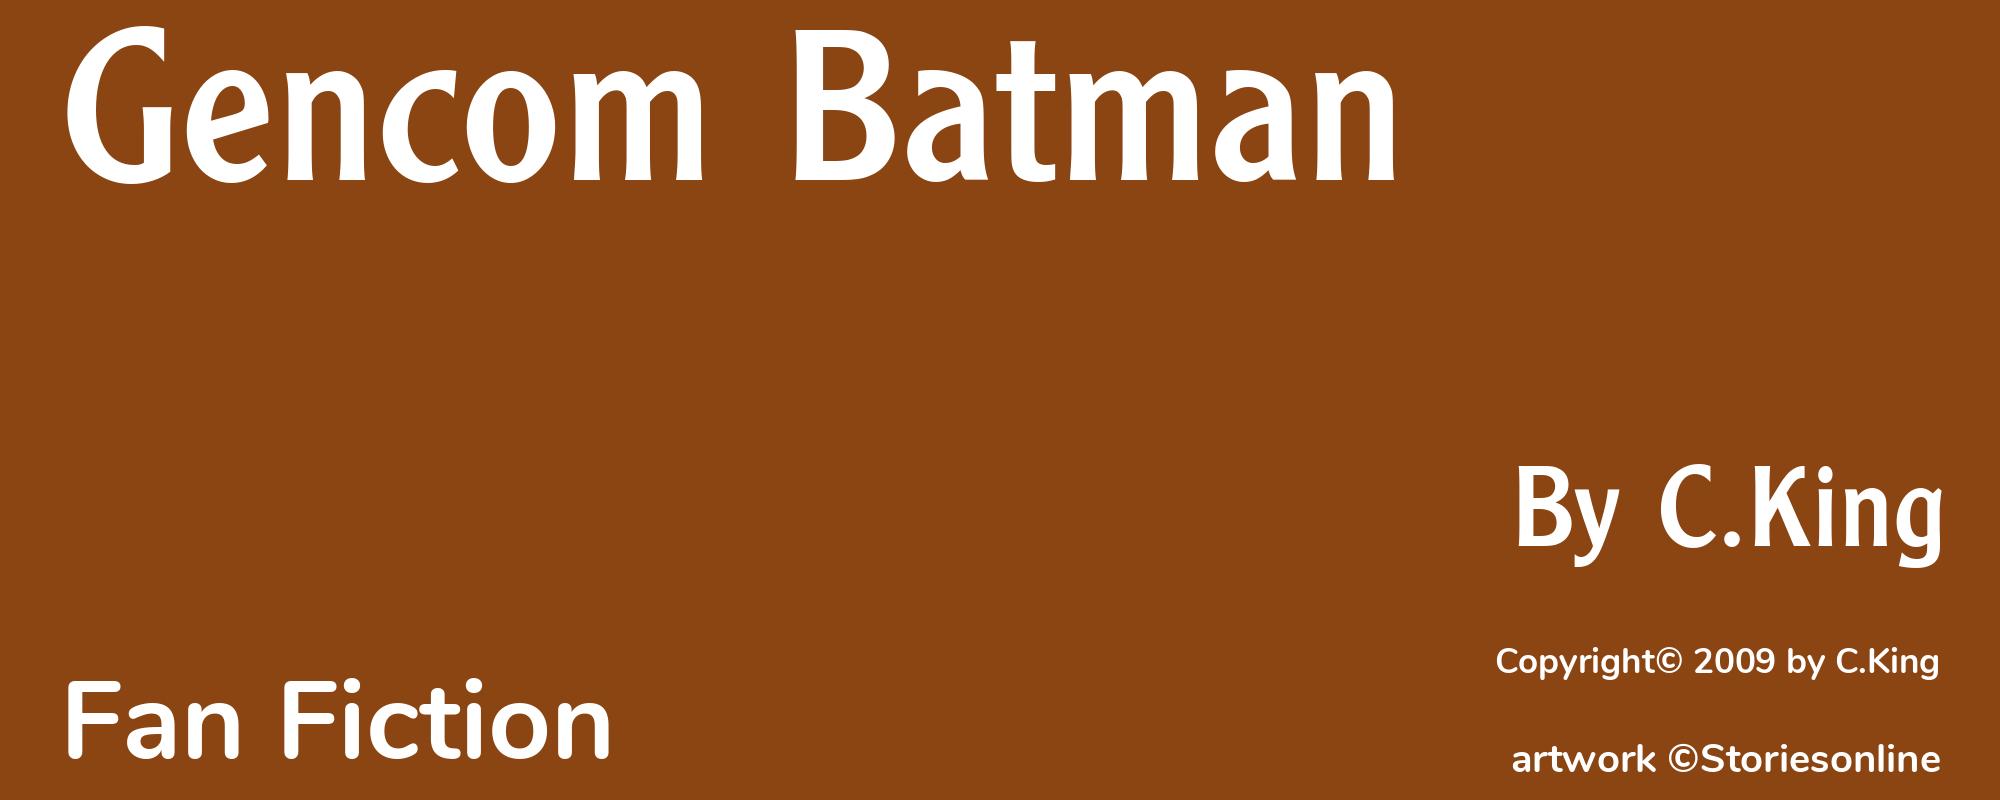 Gencom Batman - Cover